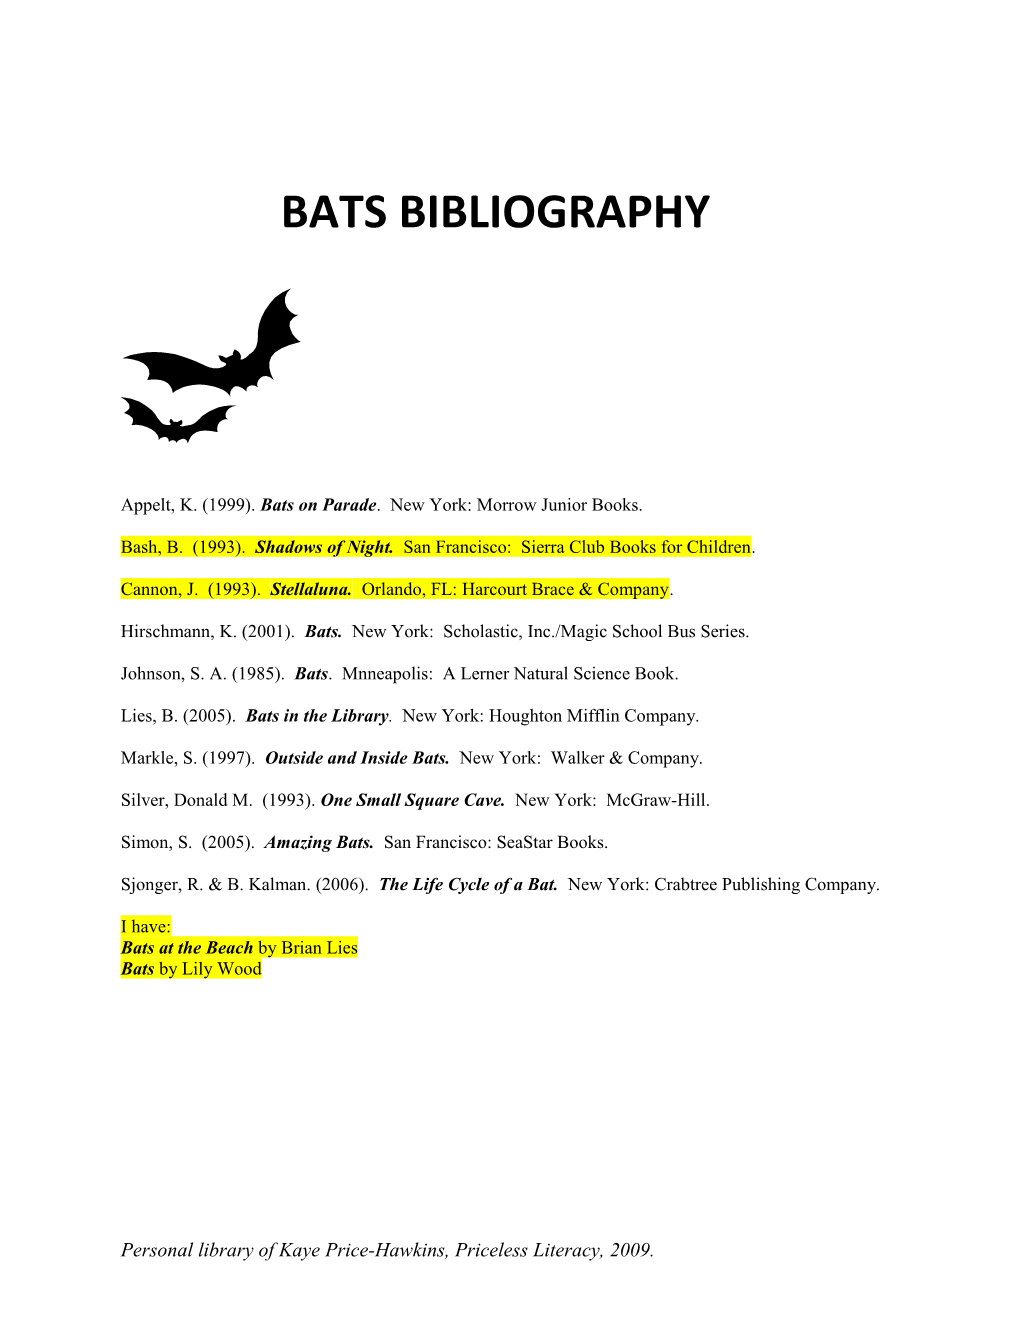 Appelt, K. (1999). Bats on Parade. New York: Morrow Junior Books